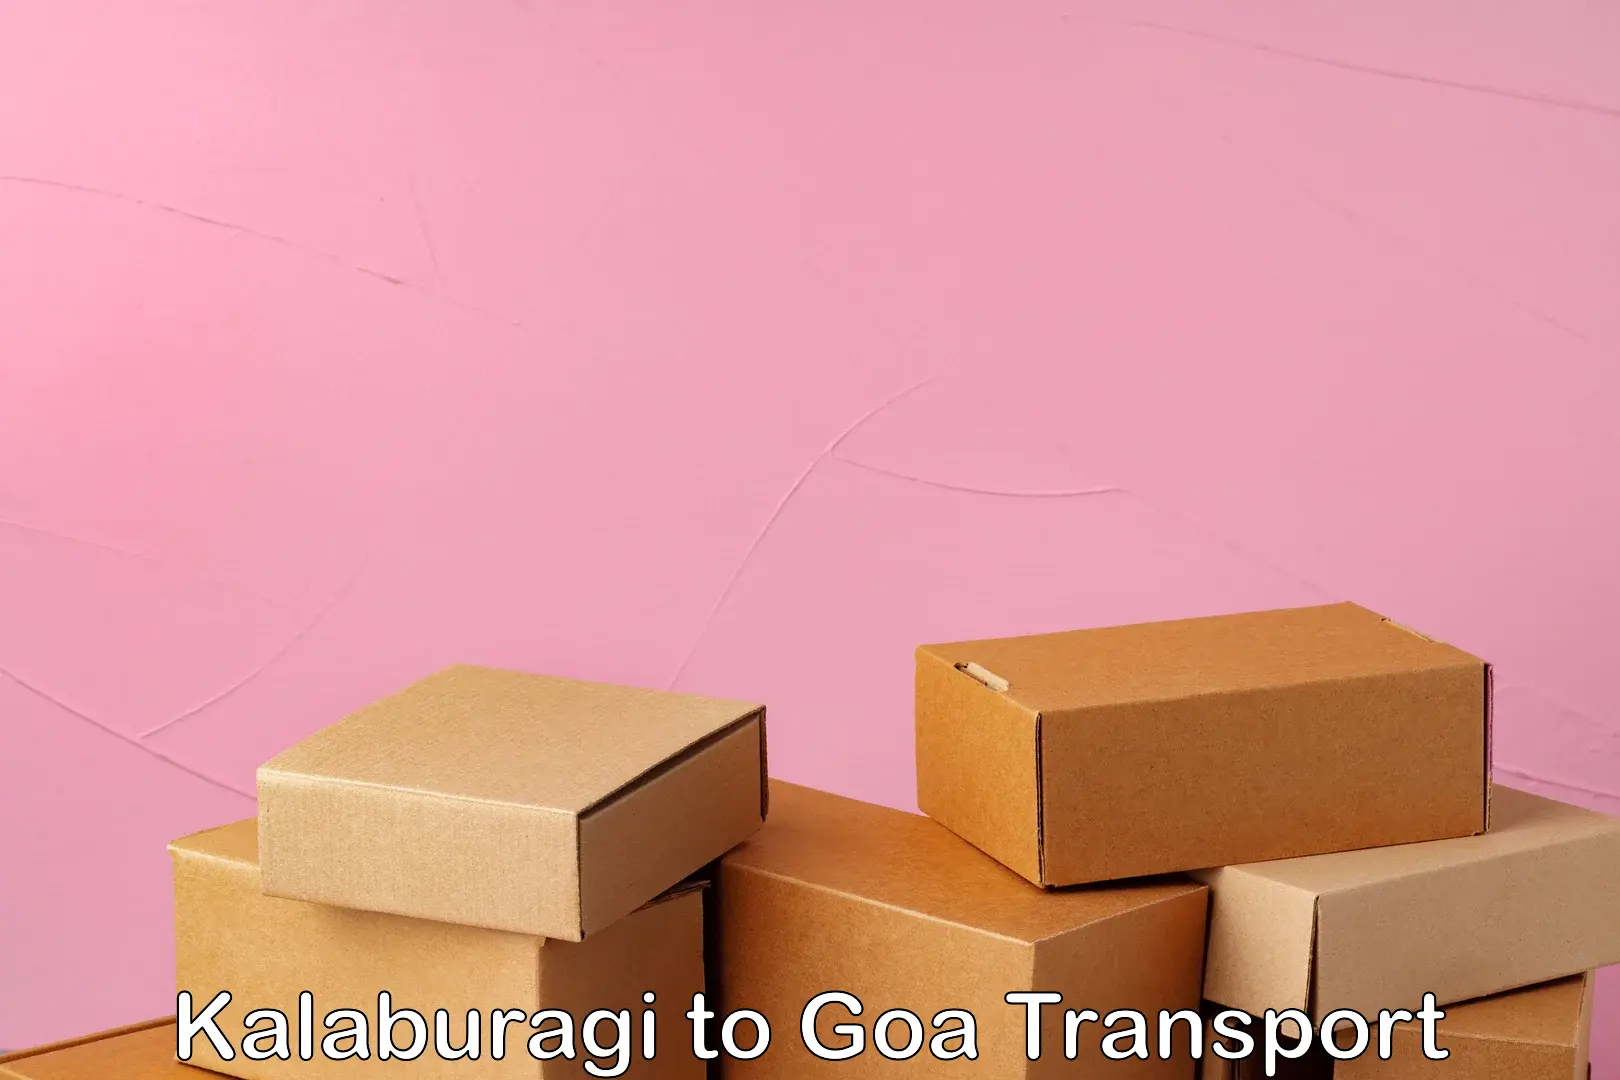 Air freight transport services Kalaburagi to Mormugao Port